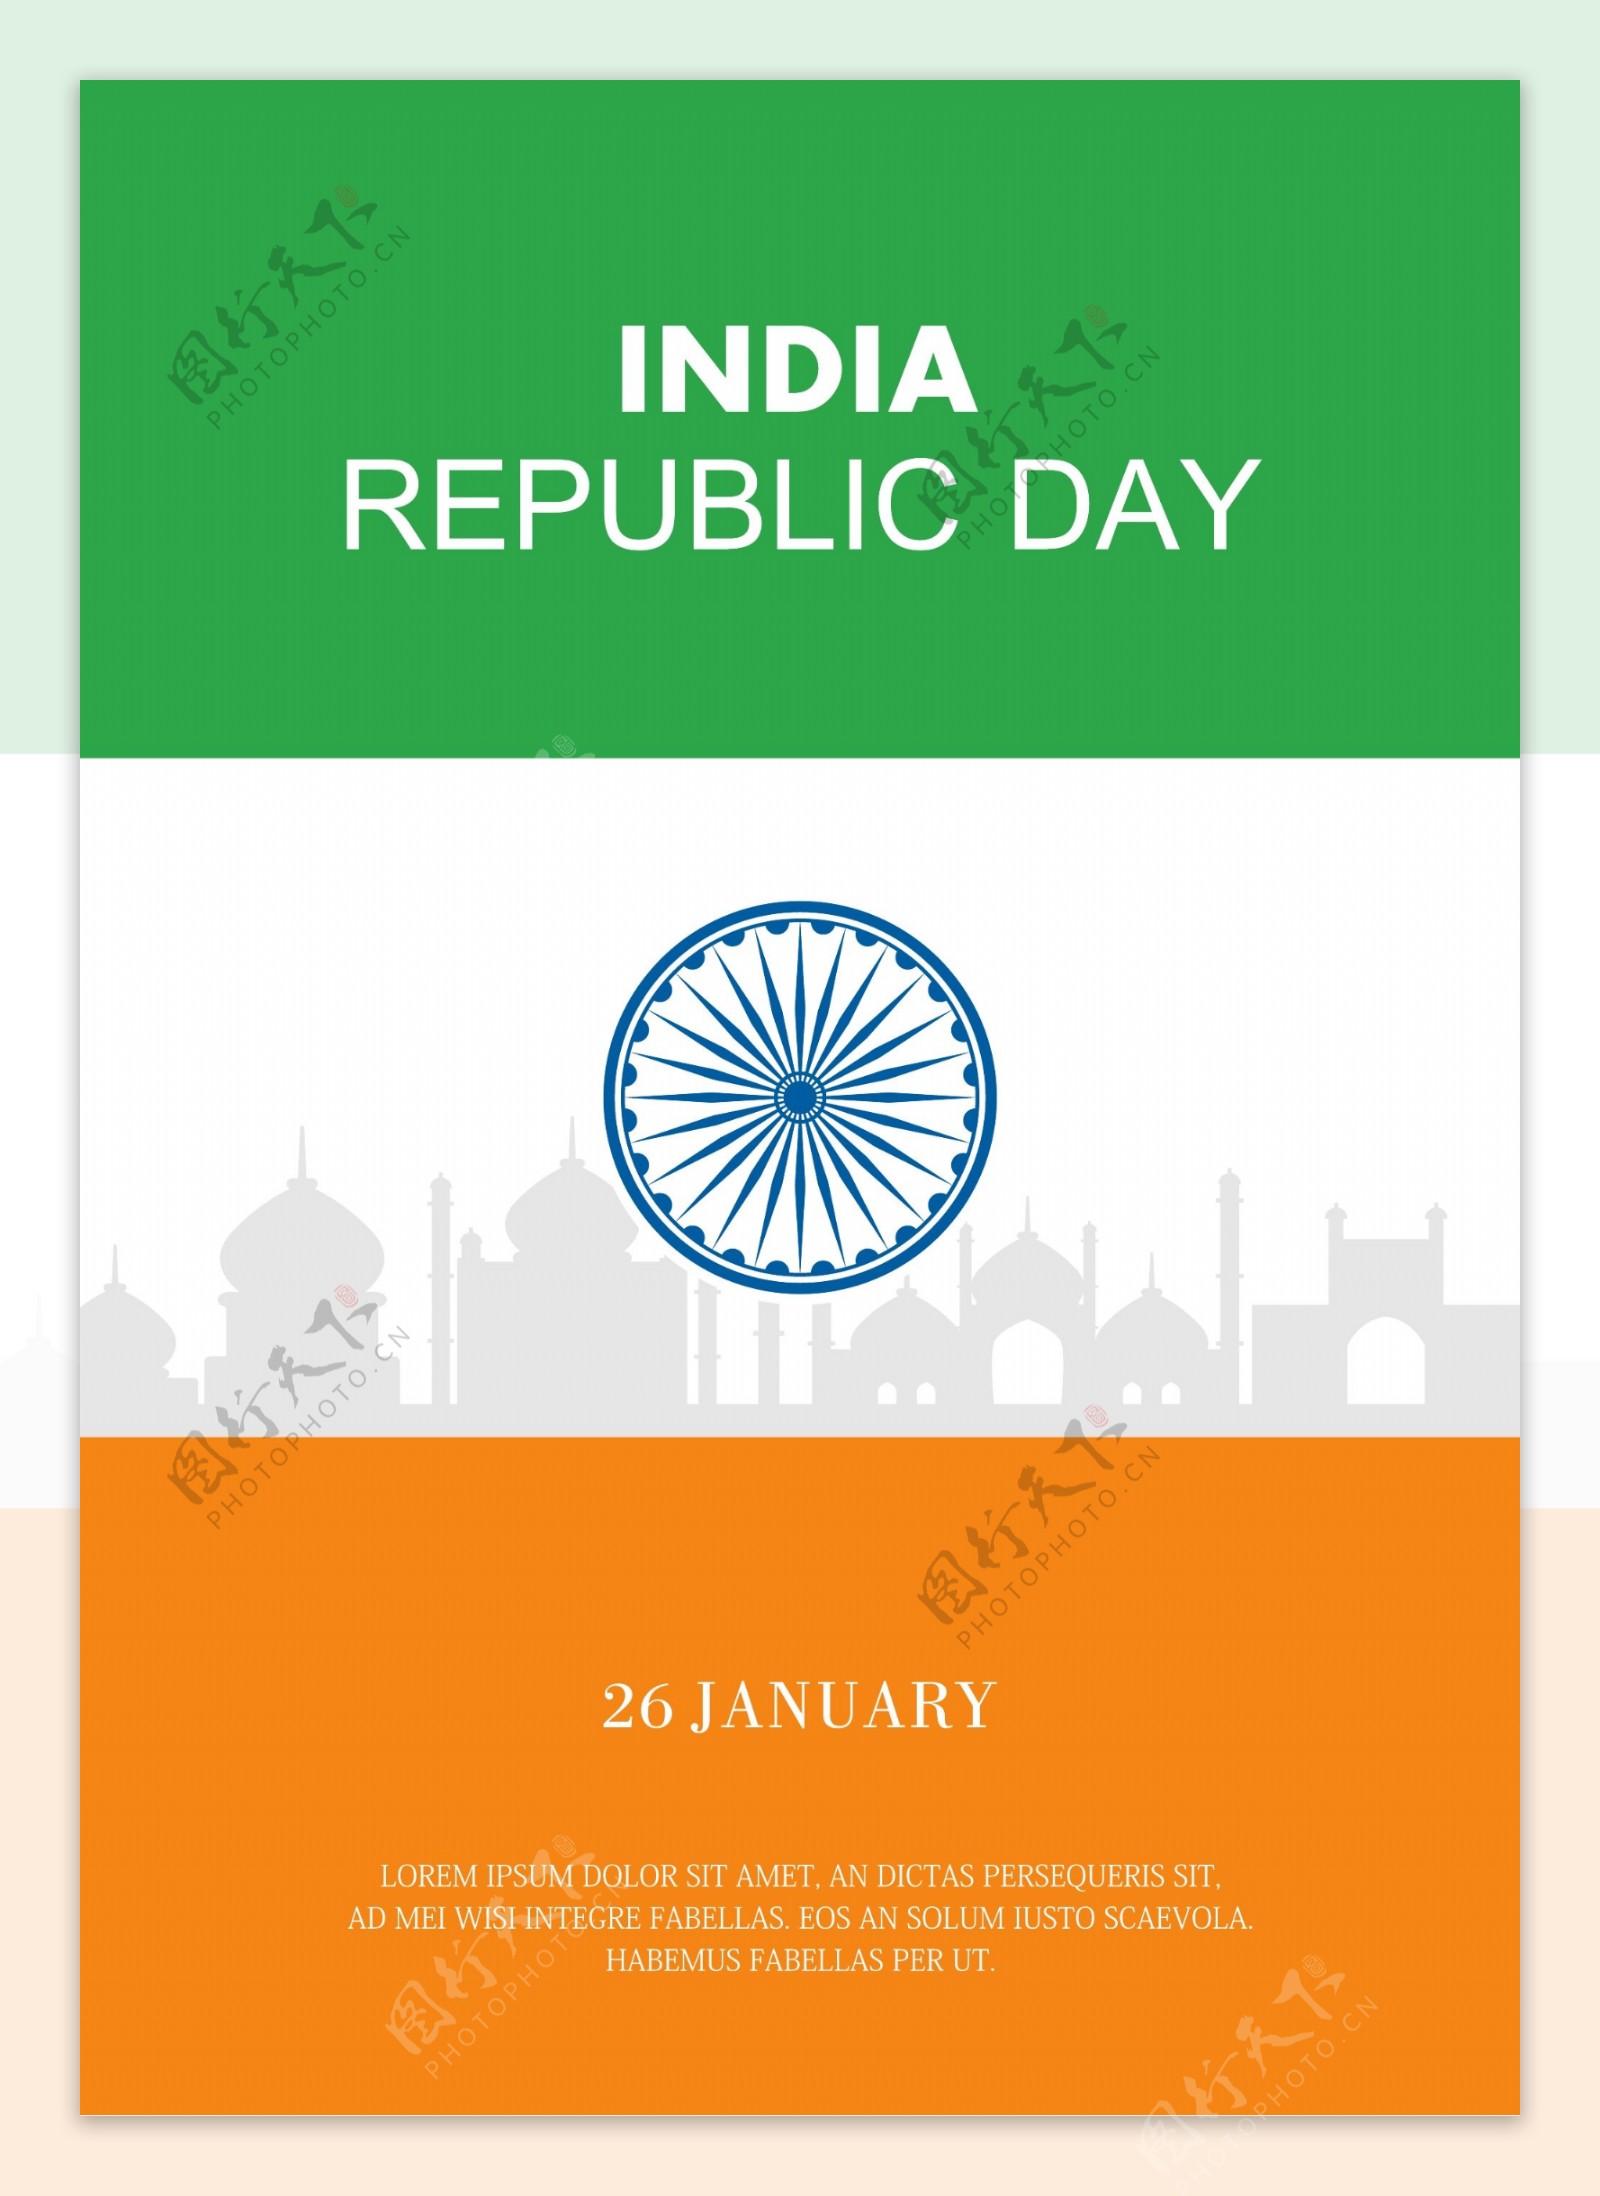 绿色黄色撞色简洁印度共和日海报